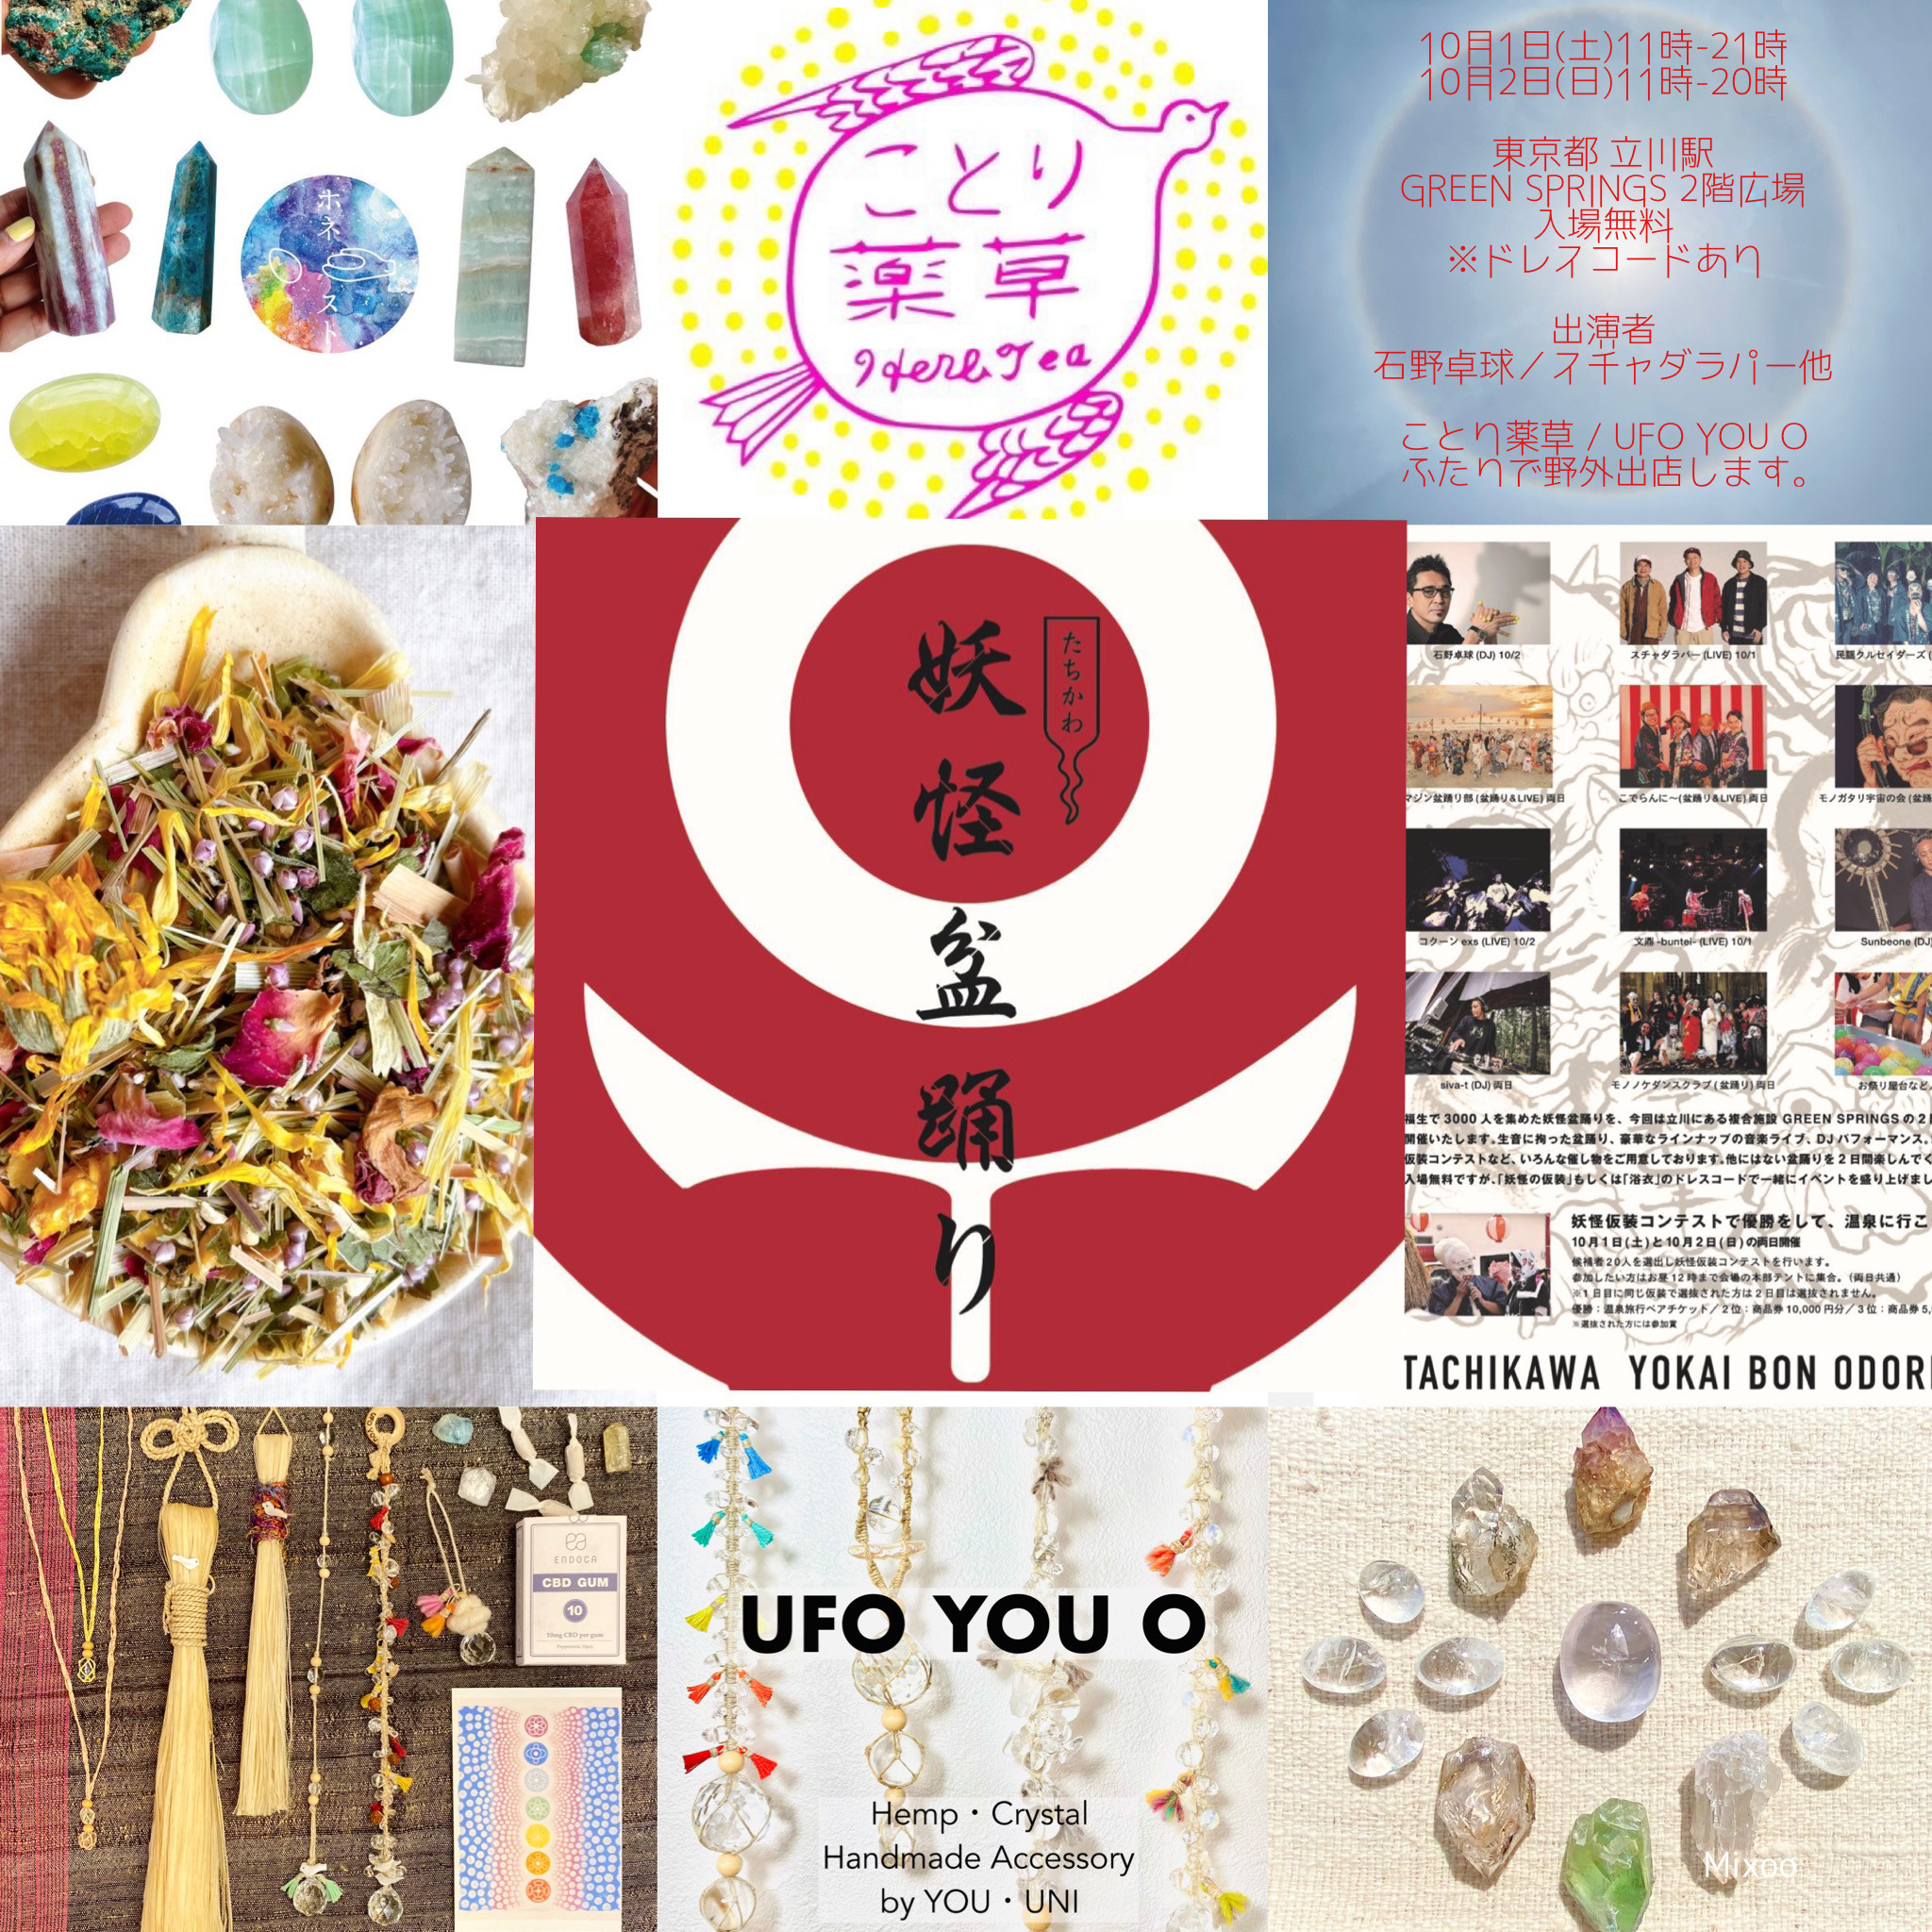 10月1日(土)•2(日)「妖怪盆踊り」音楽イベントにUFO YOU Oハンドメイド作品の出店販売が決定！